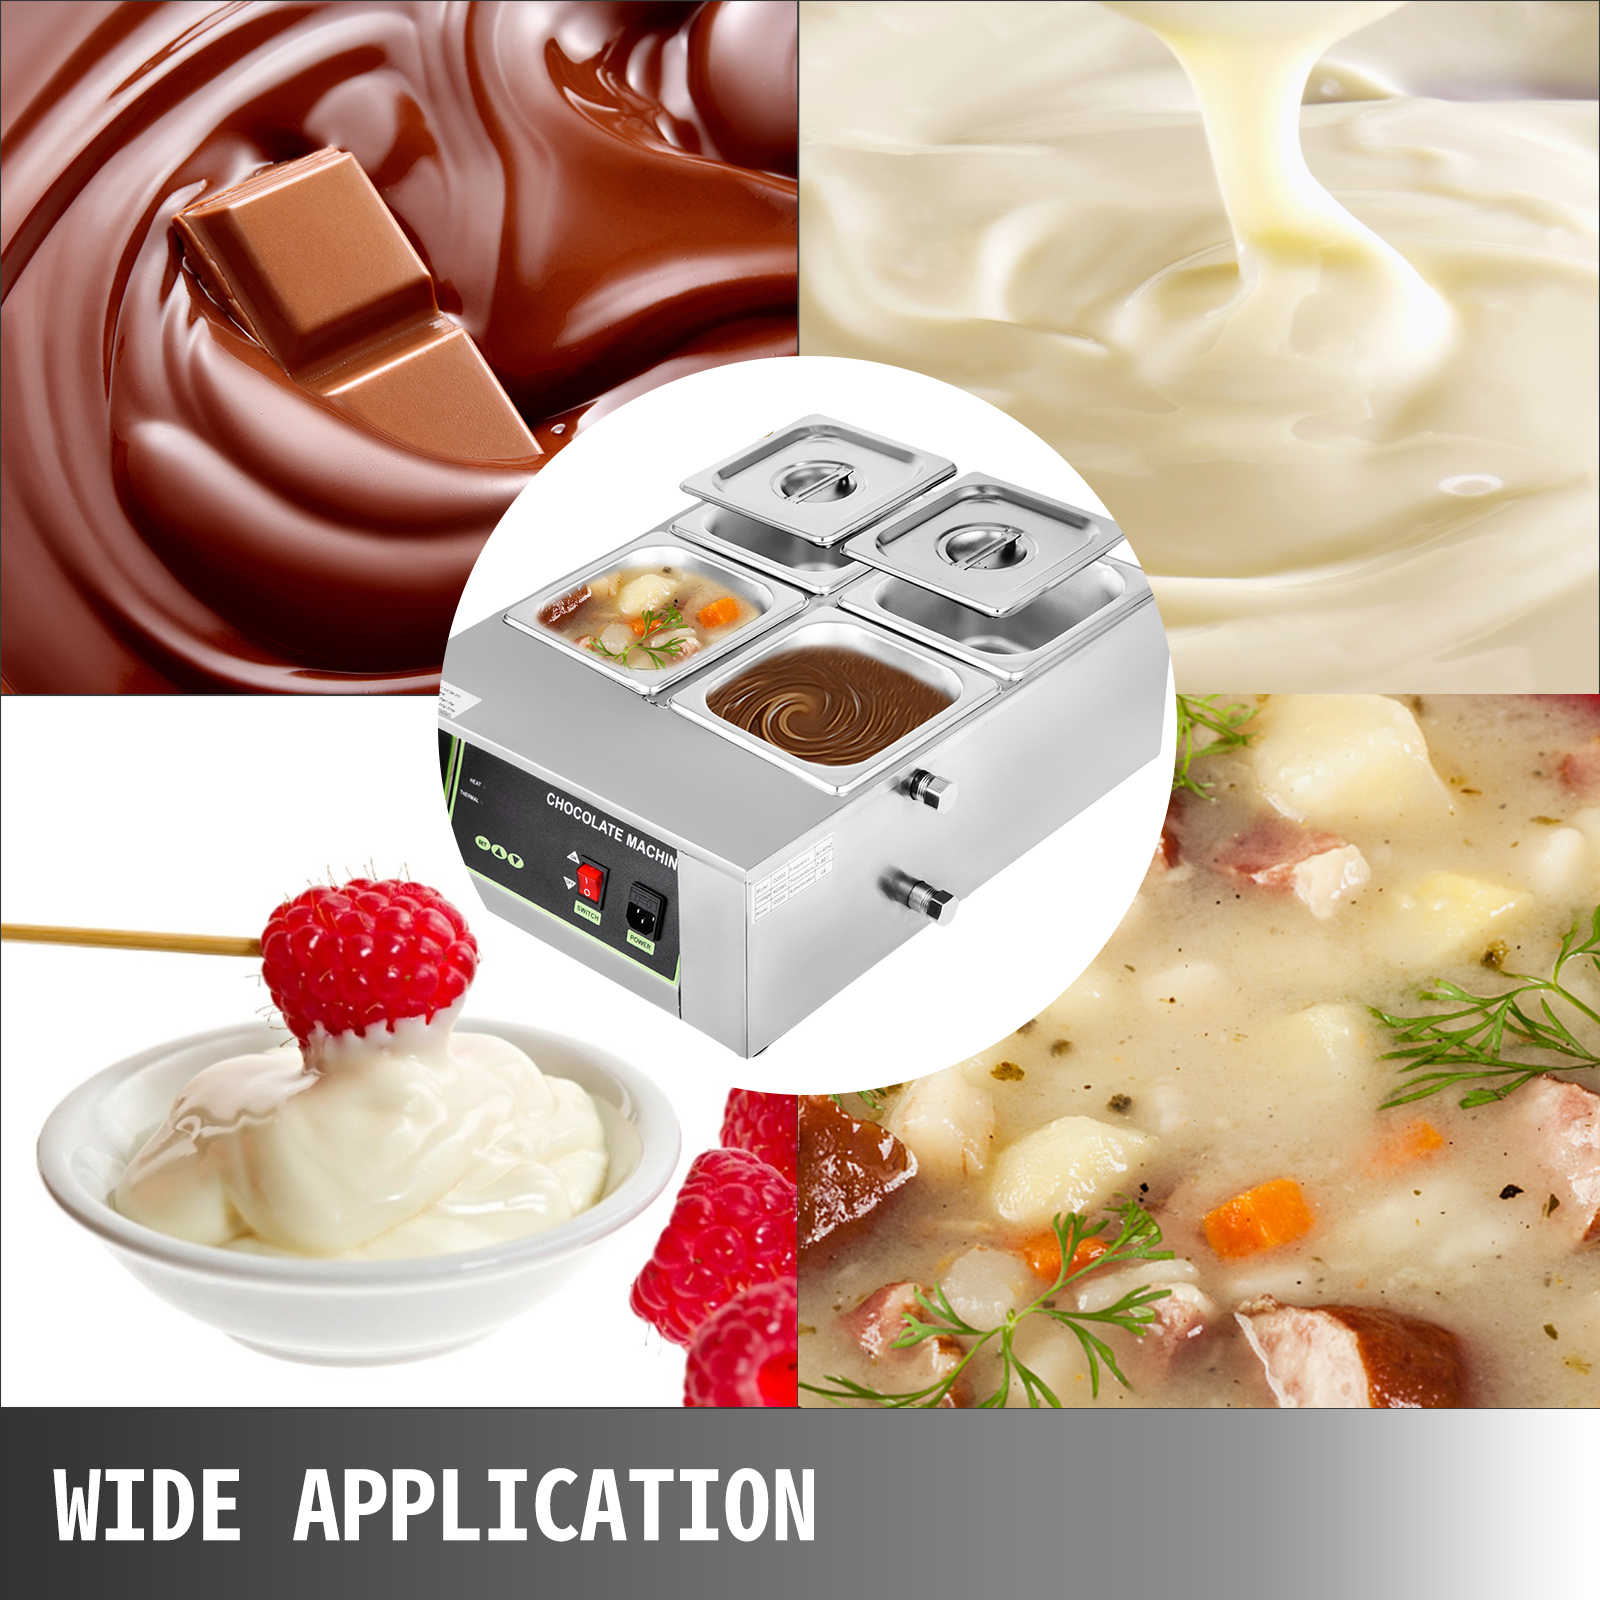 Fuente de fondue de chocolate de 3 niveles Máquina de fusión eléctrica  Chocolate